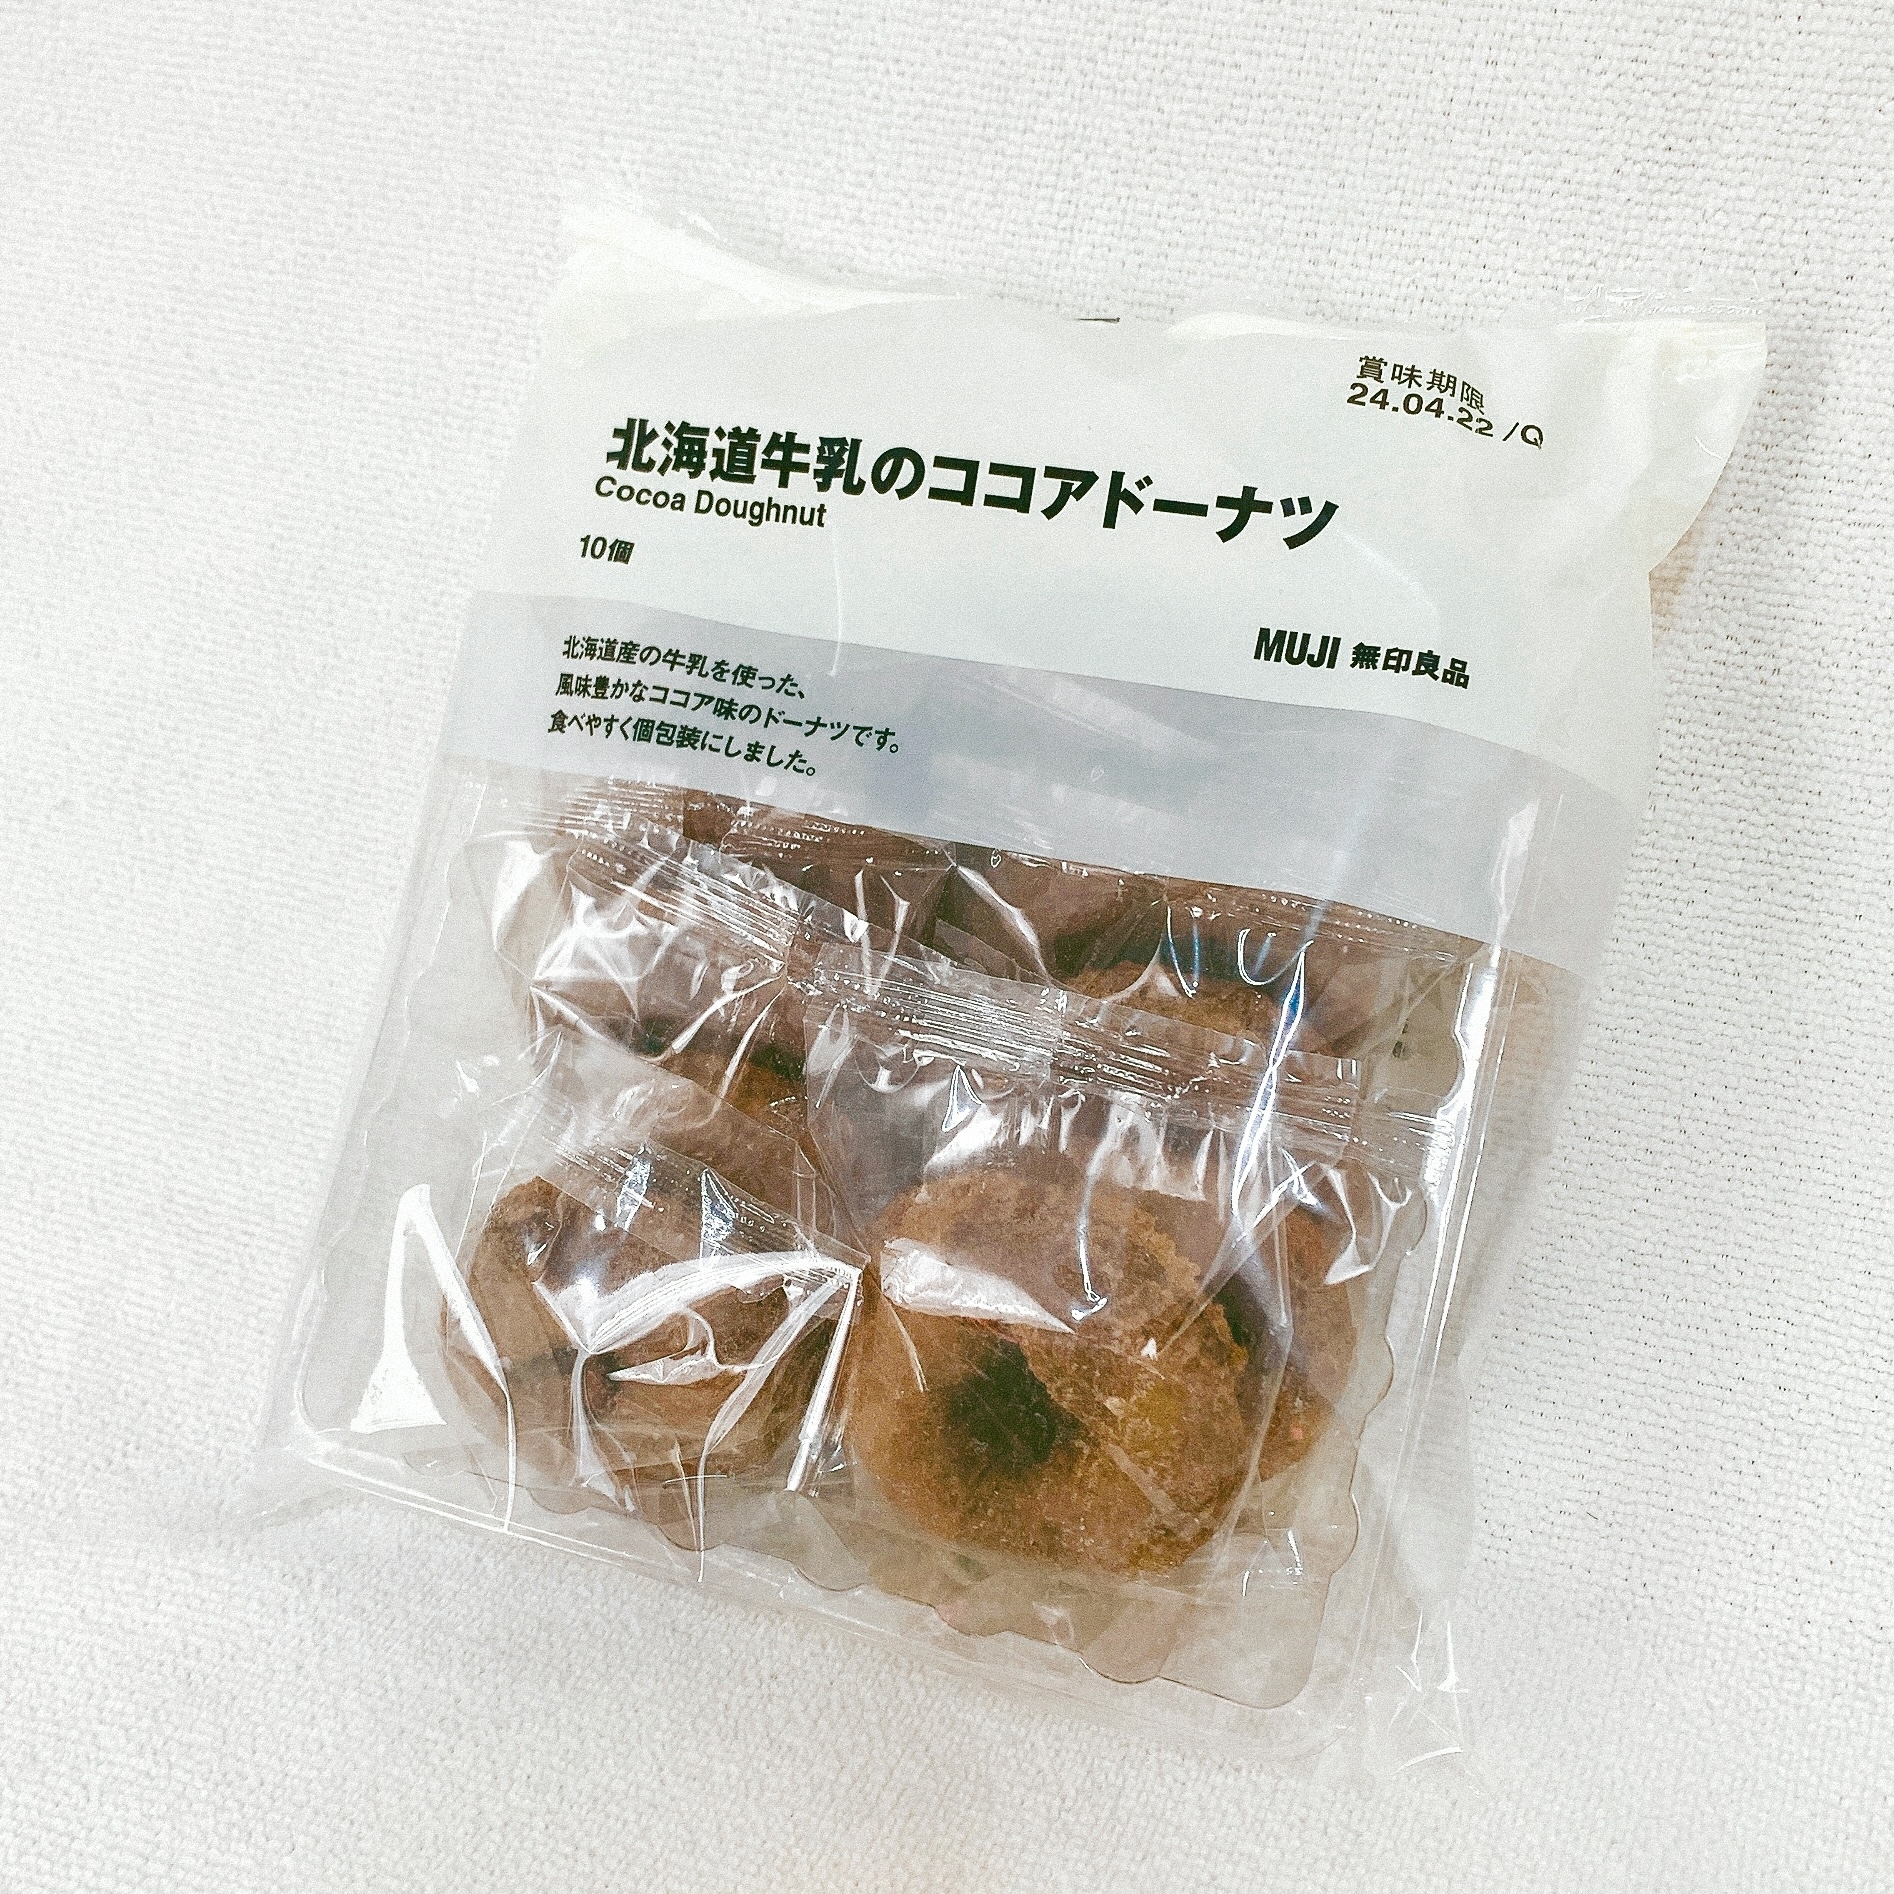 無印良品のおすすめのお菓子「大袋 北海道牛乳のココアドーナツ」